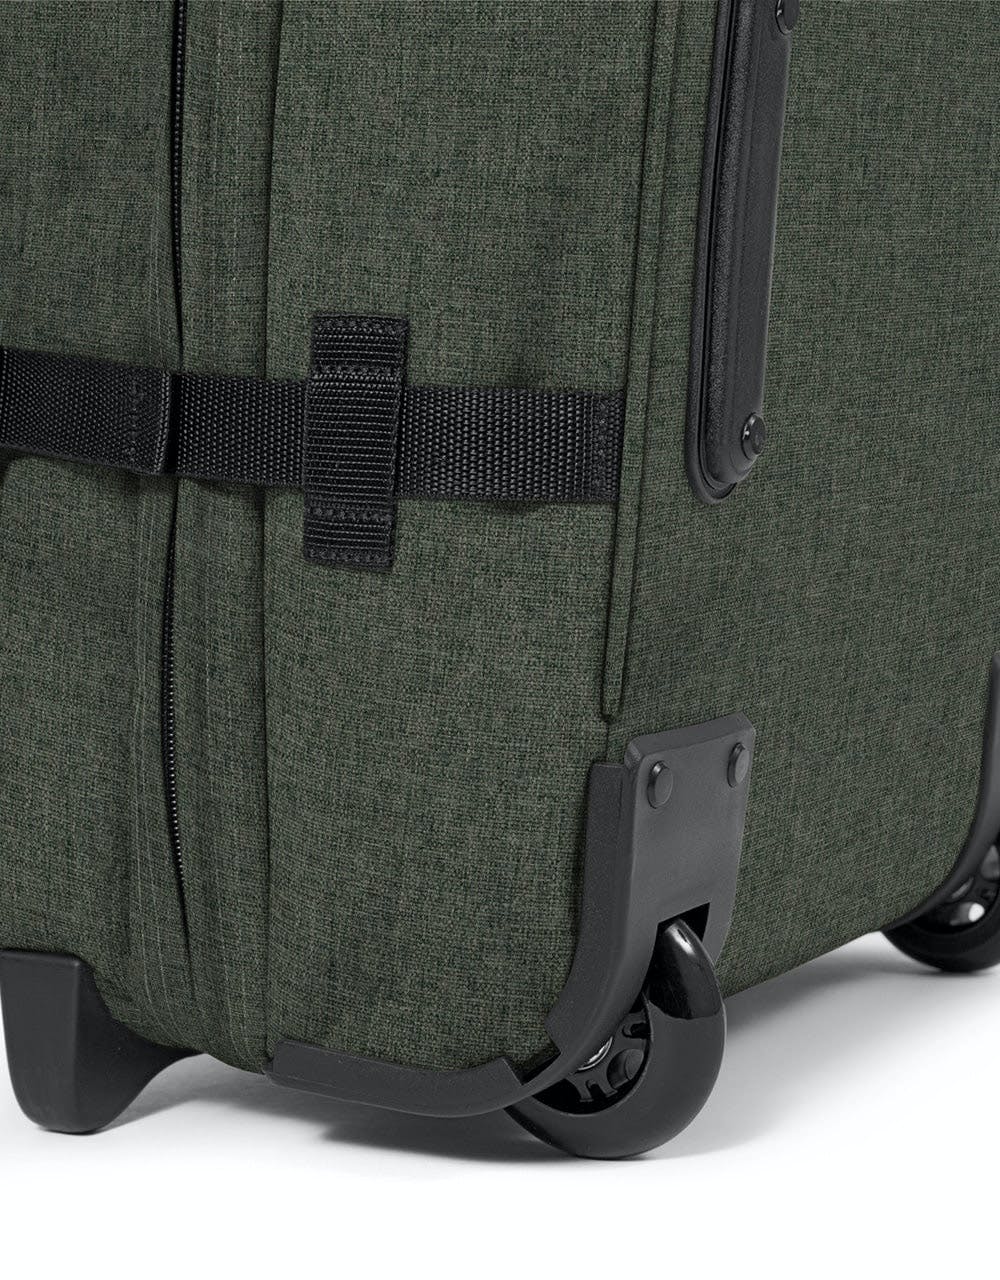 Eastpak Tranverz Medium Wheeled Luggage Bag - Crafty Khaki